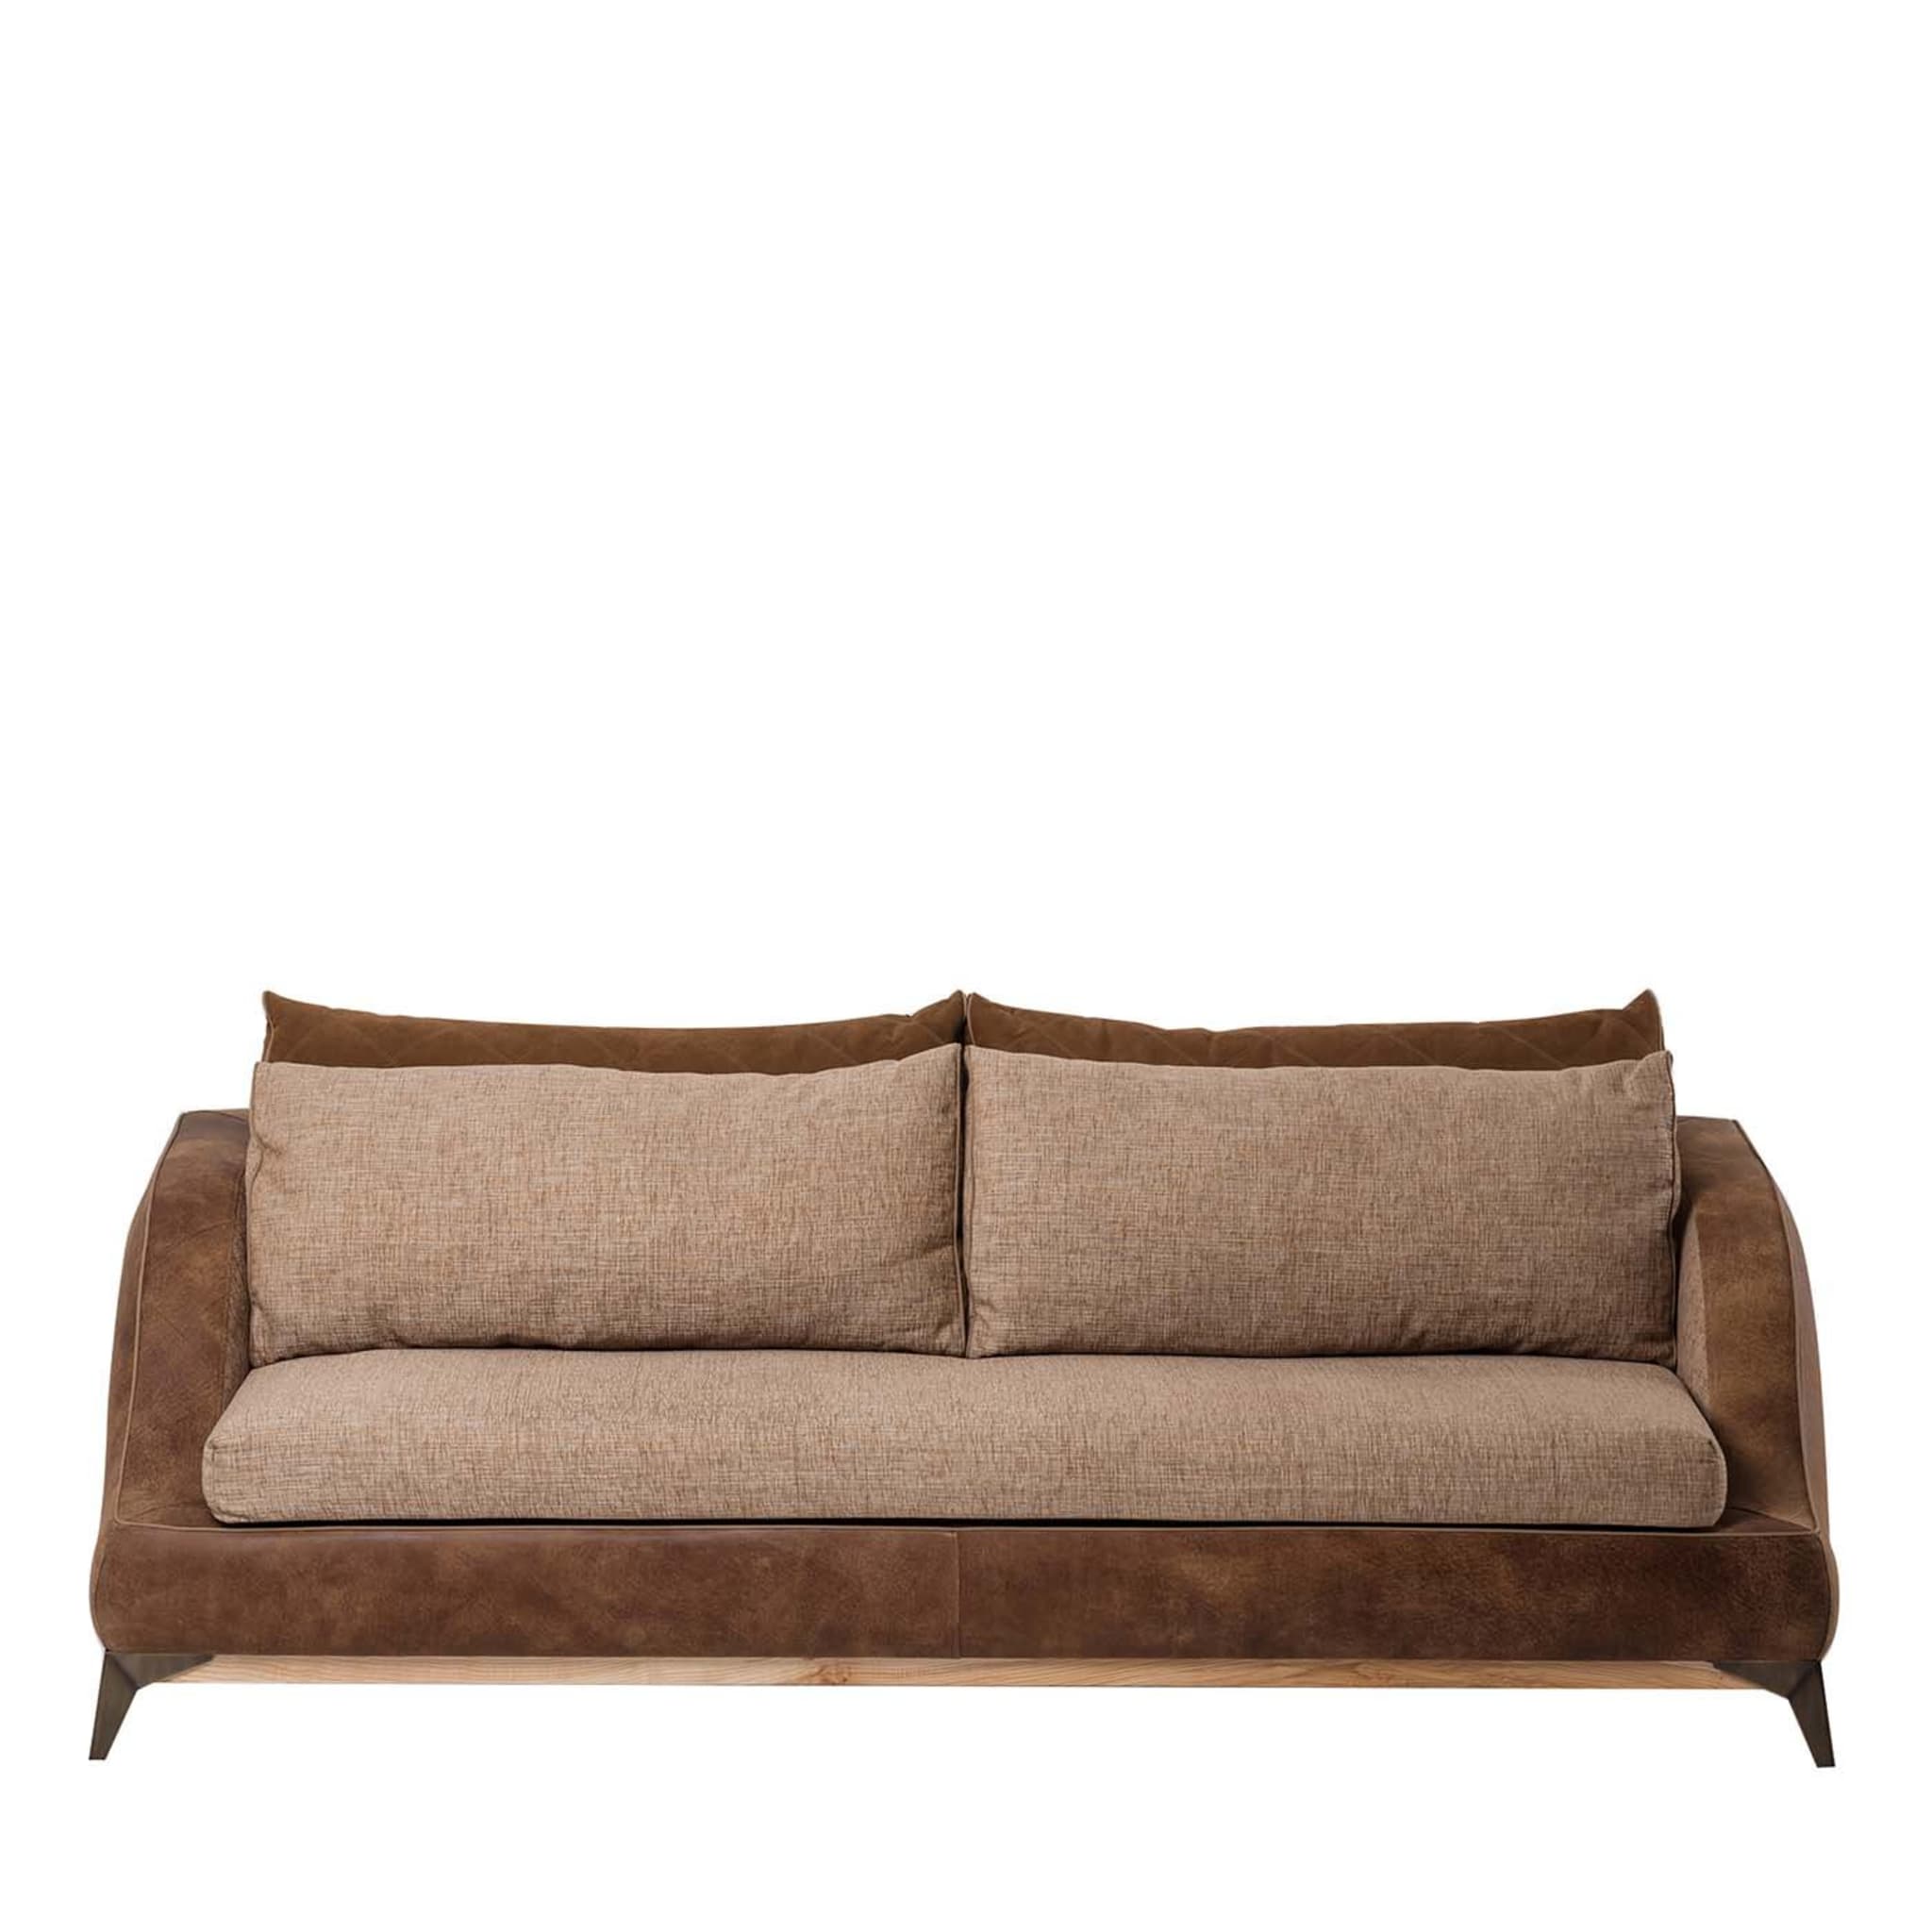 3-Sitzer Sofa Tribeca Kollektion von Marco und Giulio Mantellassi - Hauptansicht